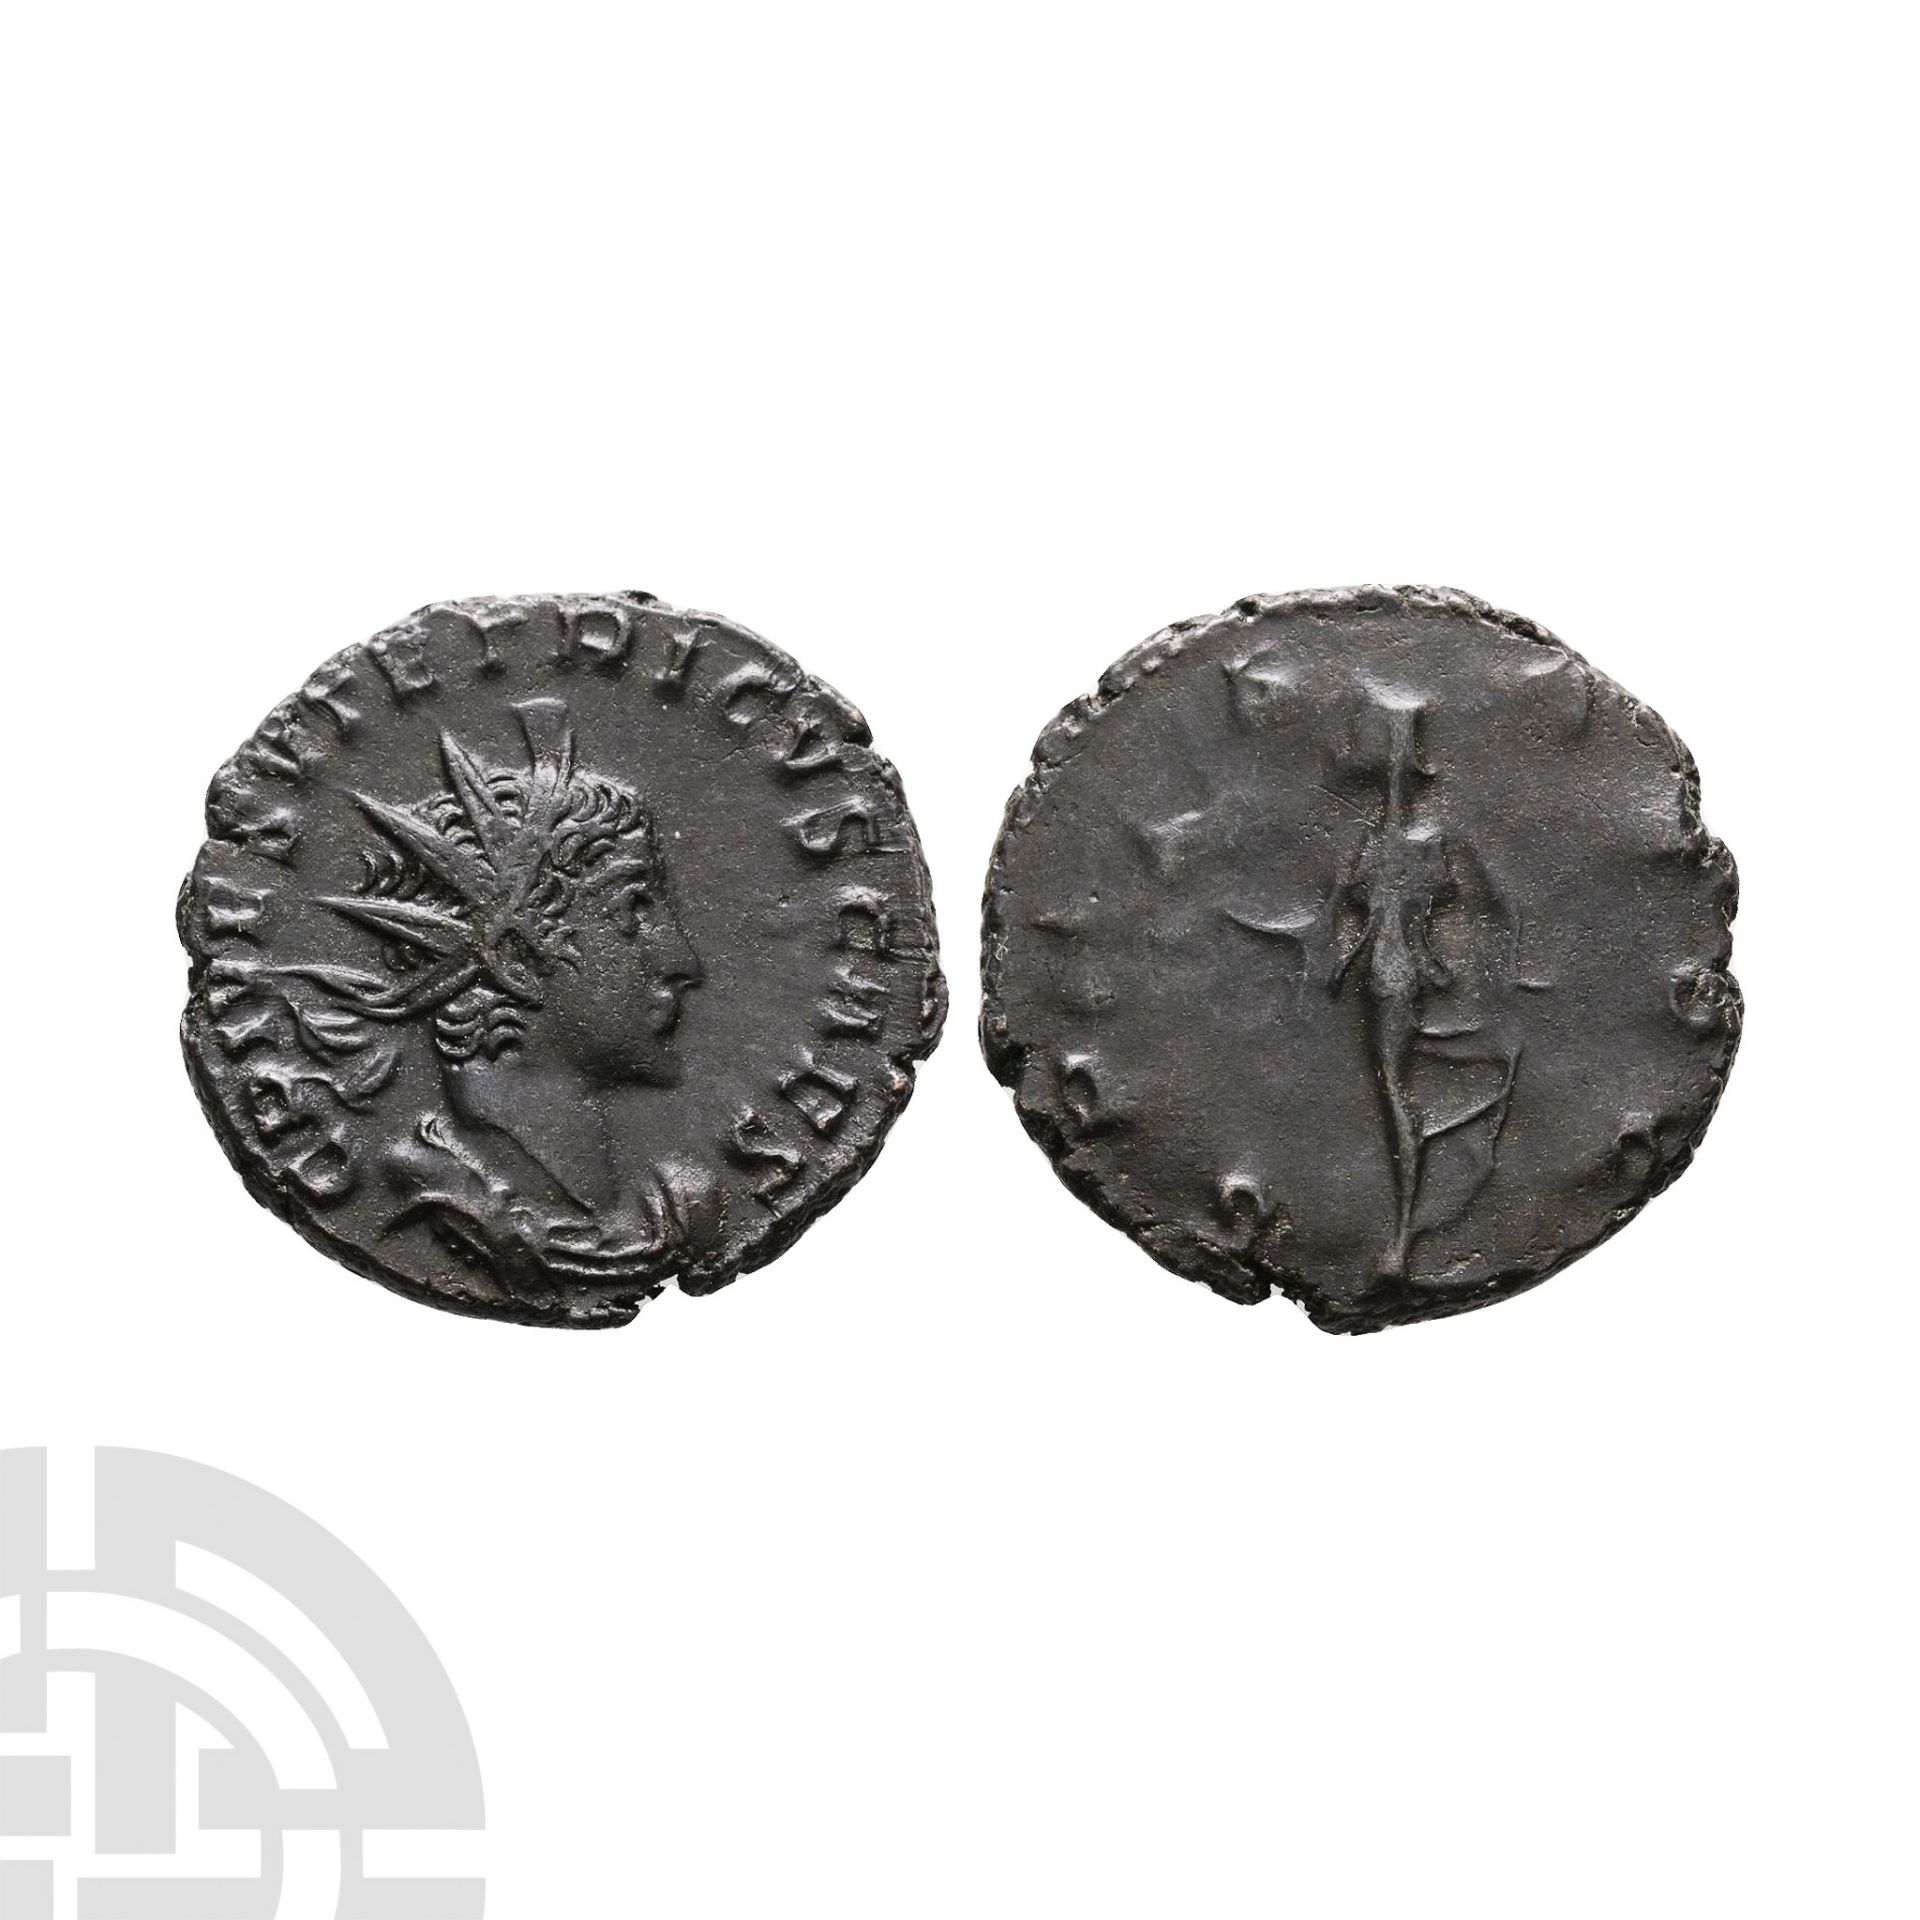 Ancient Roman Imperial Coins - Tetricus II - AE Antoninianus